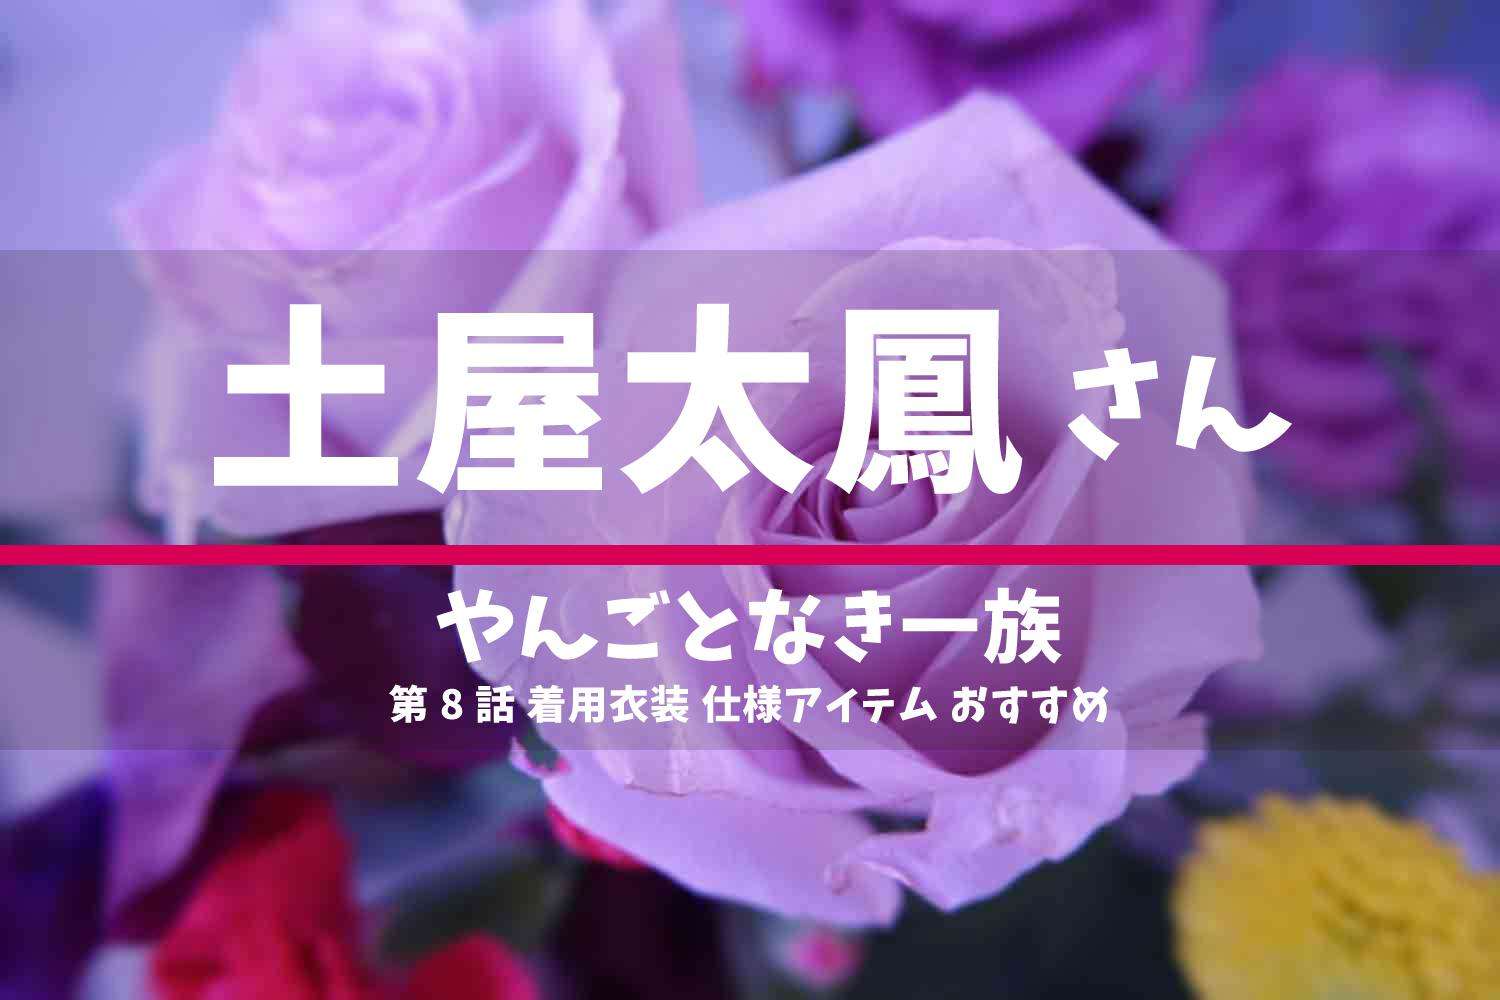 やんごとなき一族 土屋太鳳さん ドラマ 衣装 2022年6月9日放送